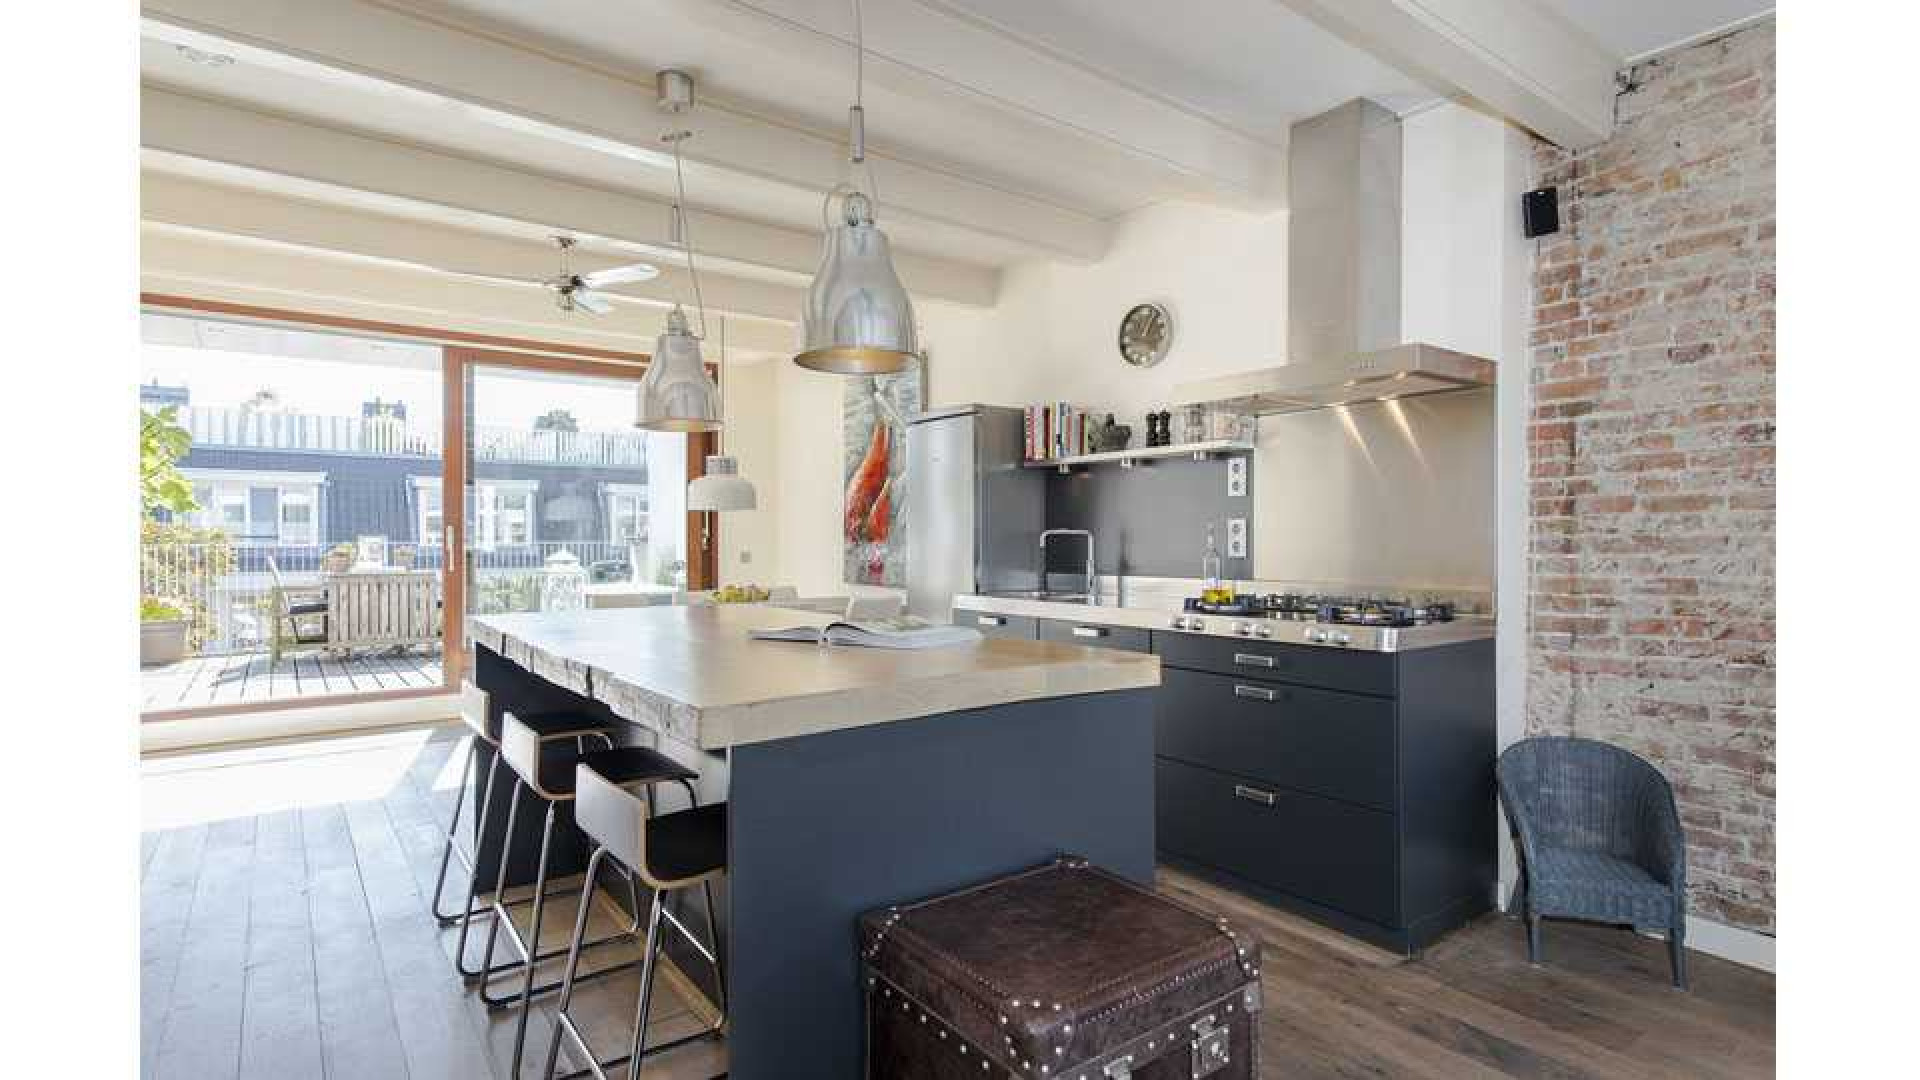 Armin van Buuren koopt luxe dubbel bovenhuis in Amsterdam Oud-West. Zie foto's 6